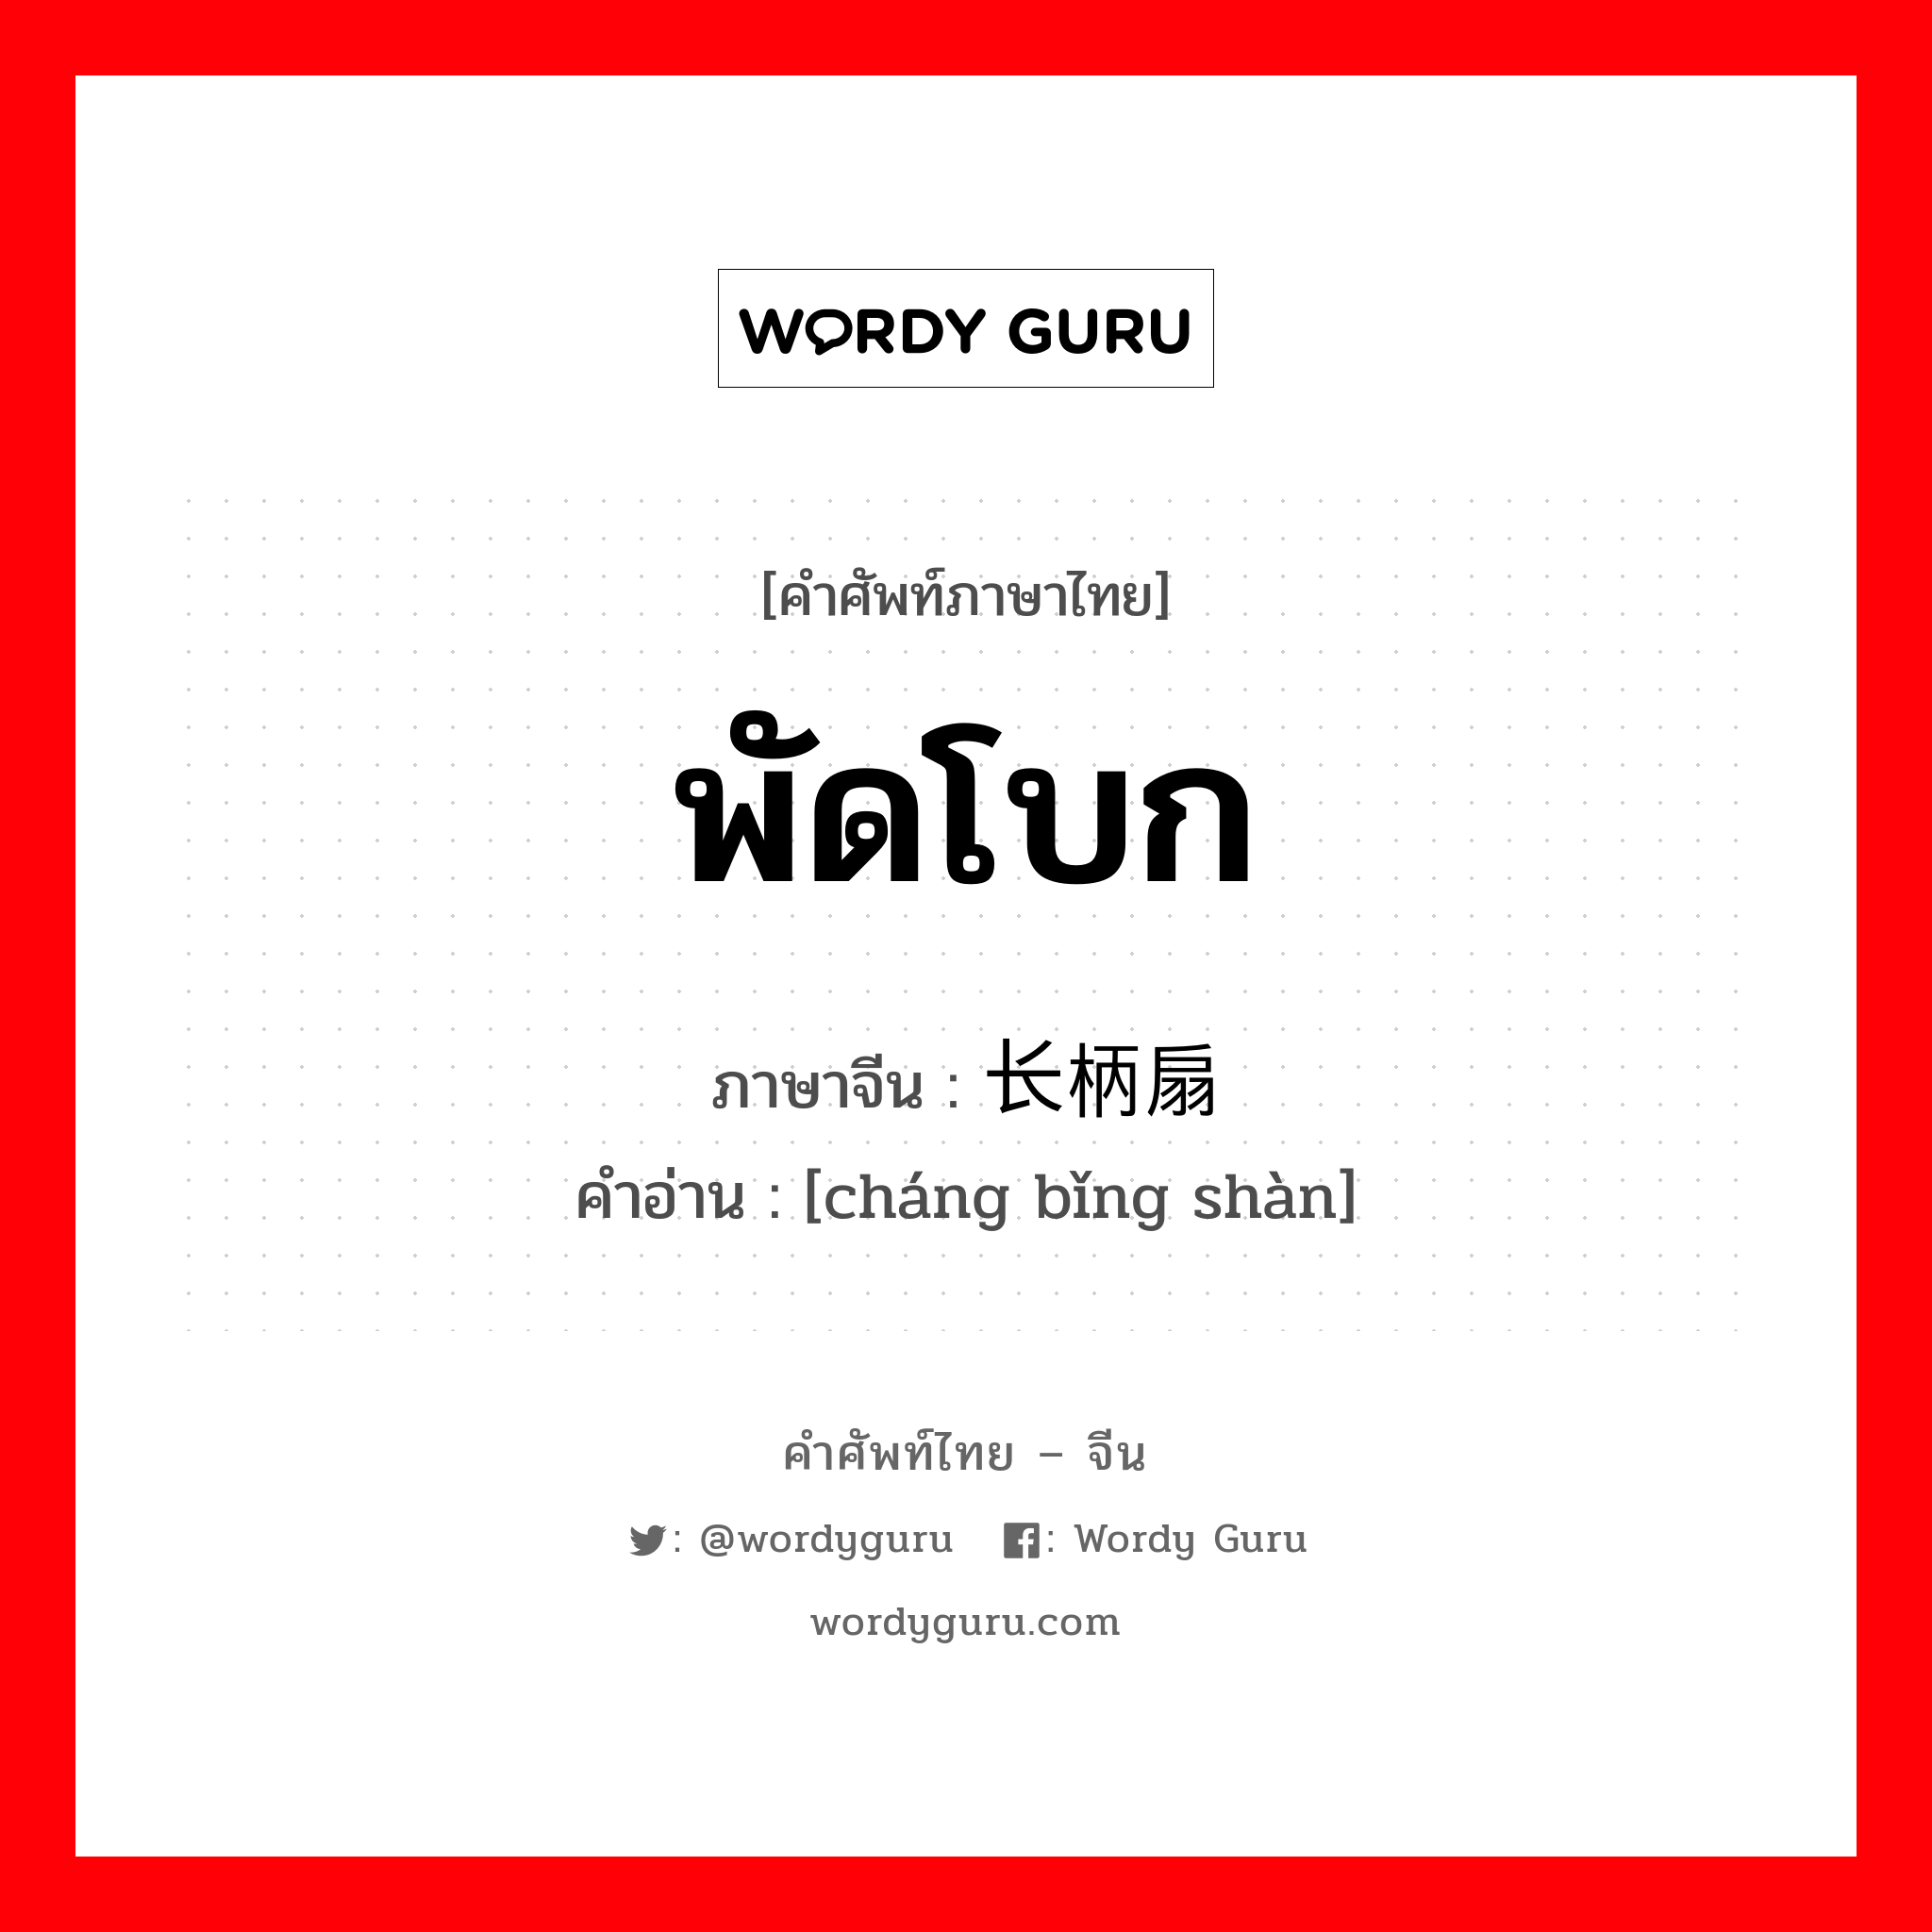 พัดโบก ภาษาจีนคืออะไร, คำศัพท์ภาษาไทย - จีน พัดโบก ภาษาจีน 长柄扇 คำอ่าน [cháng bǐng shàn]